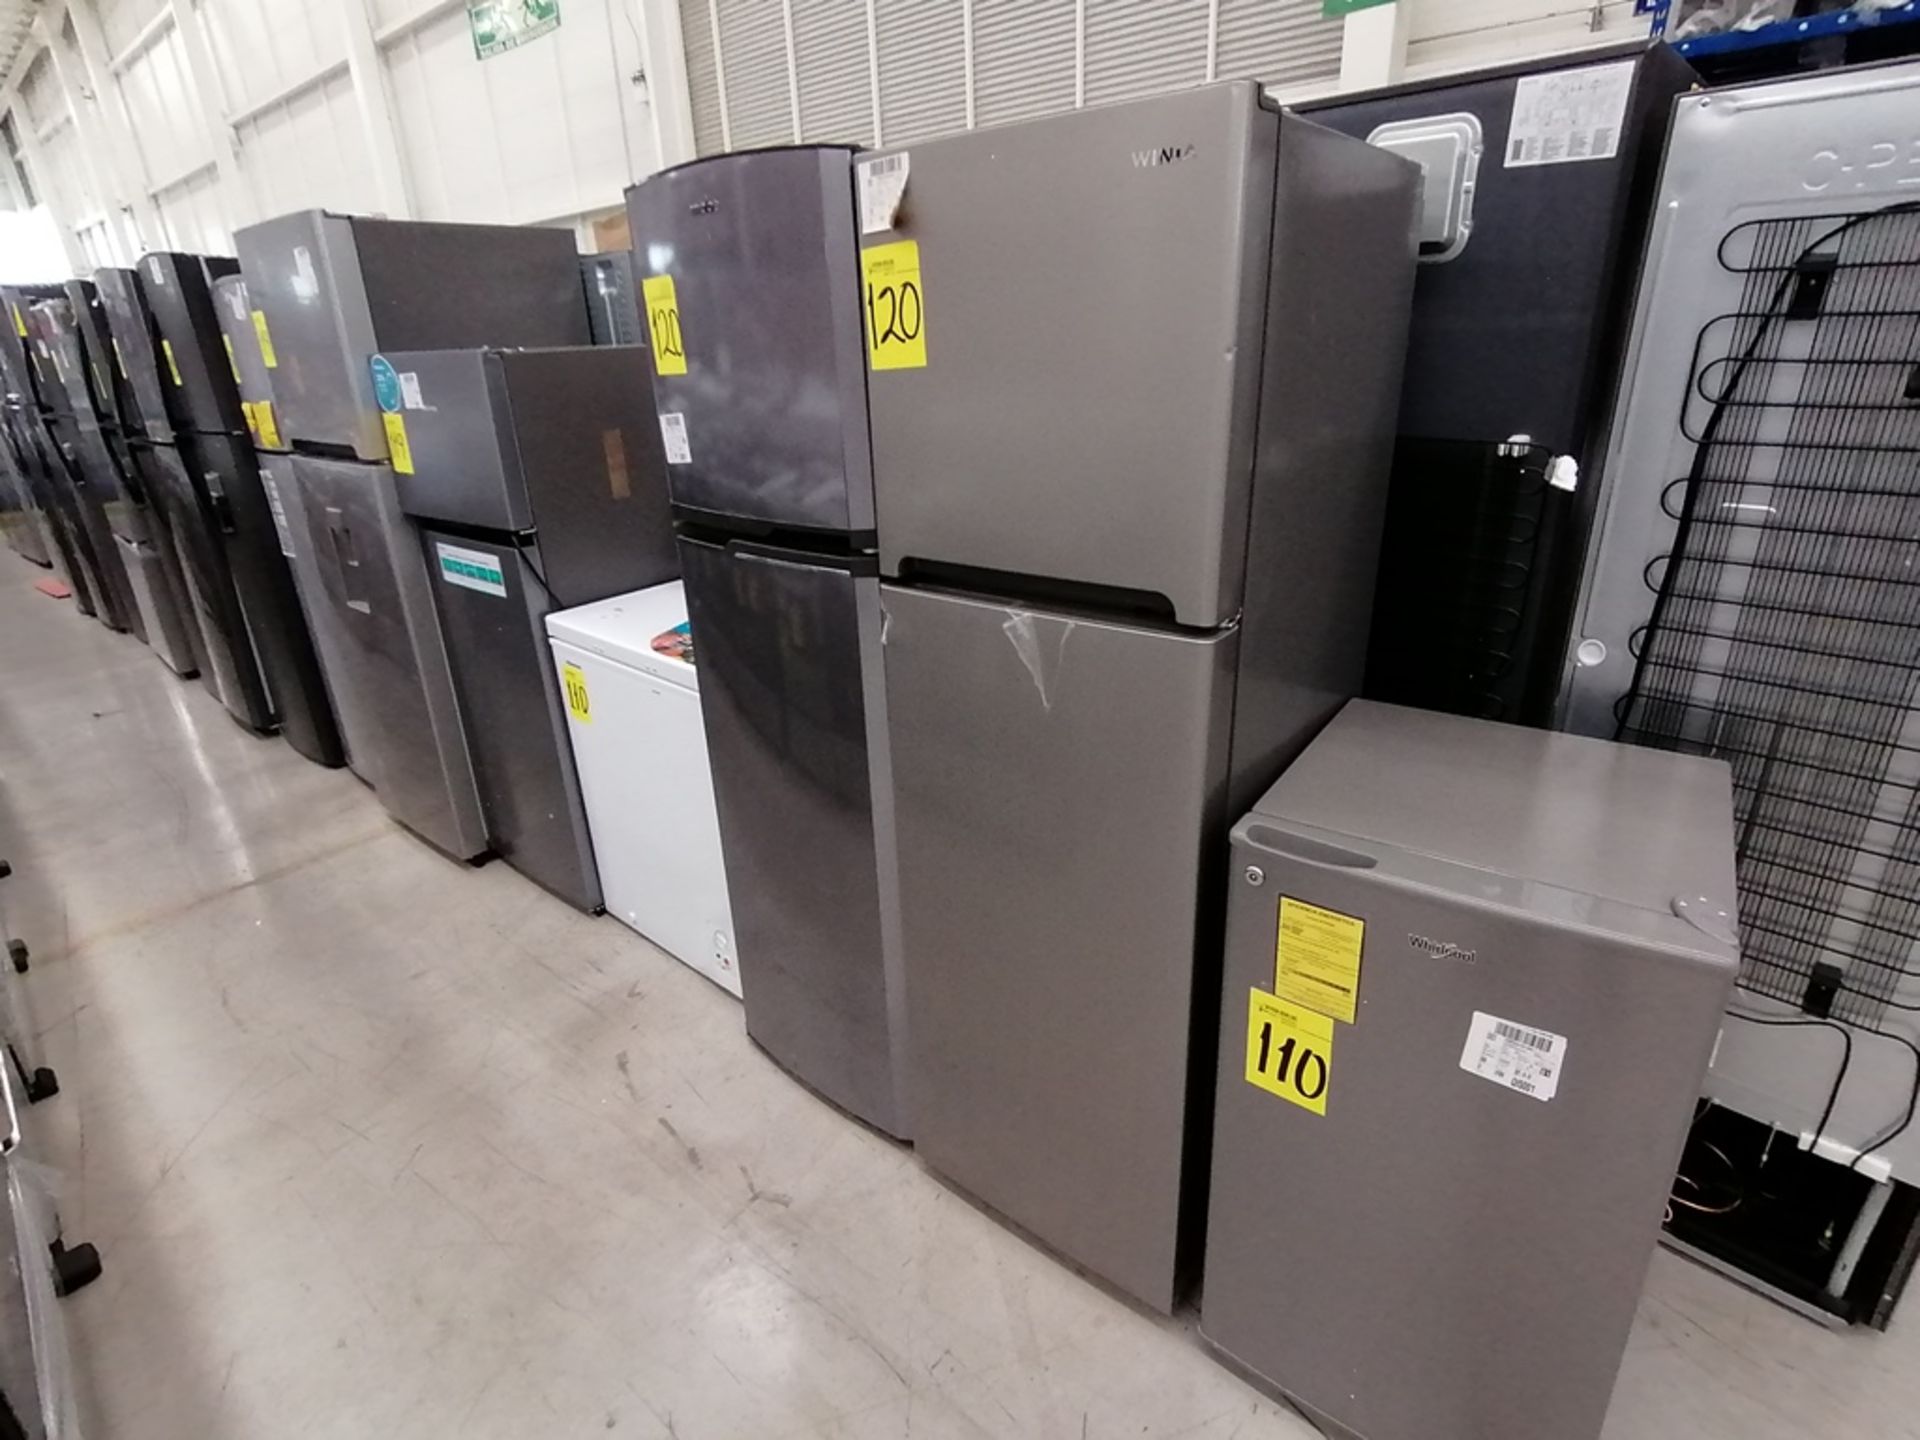 Lote de 2 refrigeradores incluye: 1 Refrigerador, Marca Mabe, Modelo RMA1025VNX, Serie 2110B623189, - Image 9 of 17